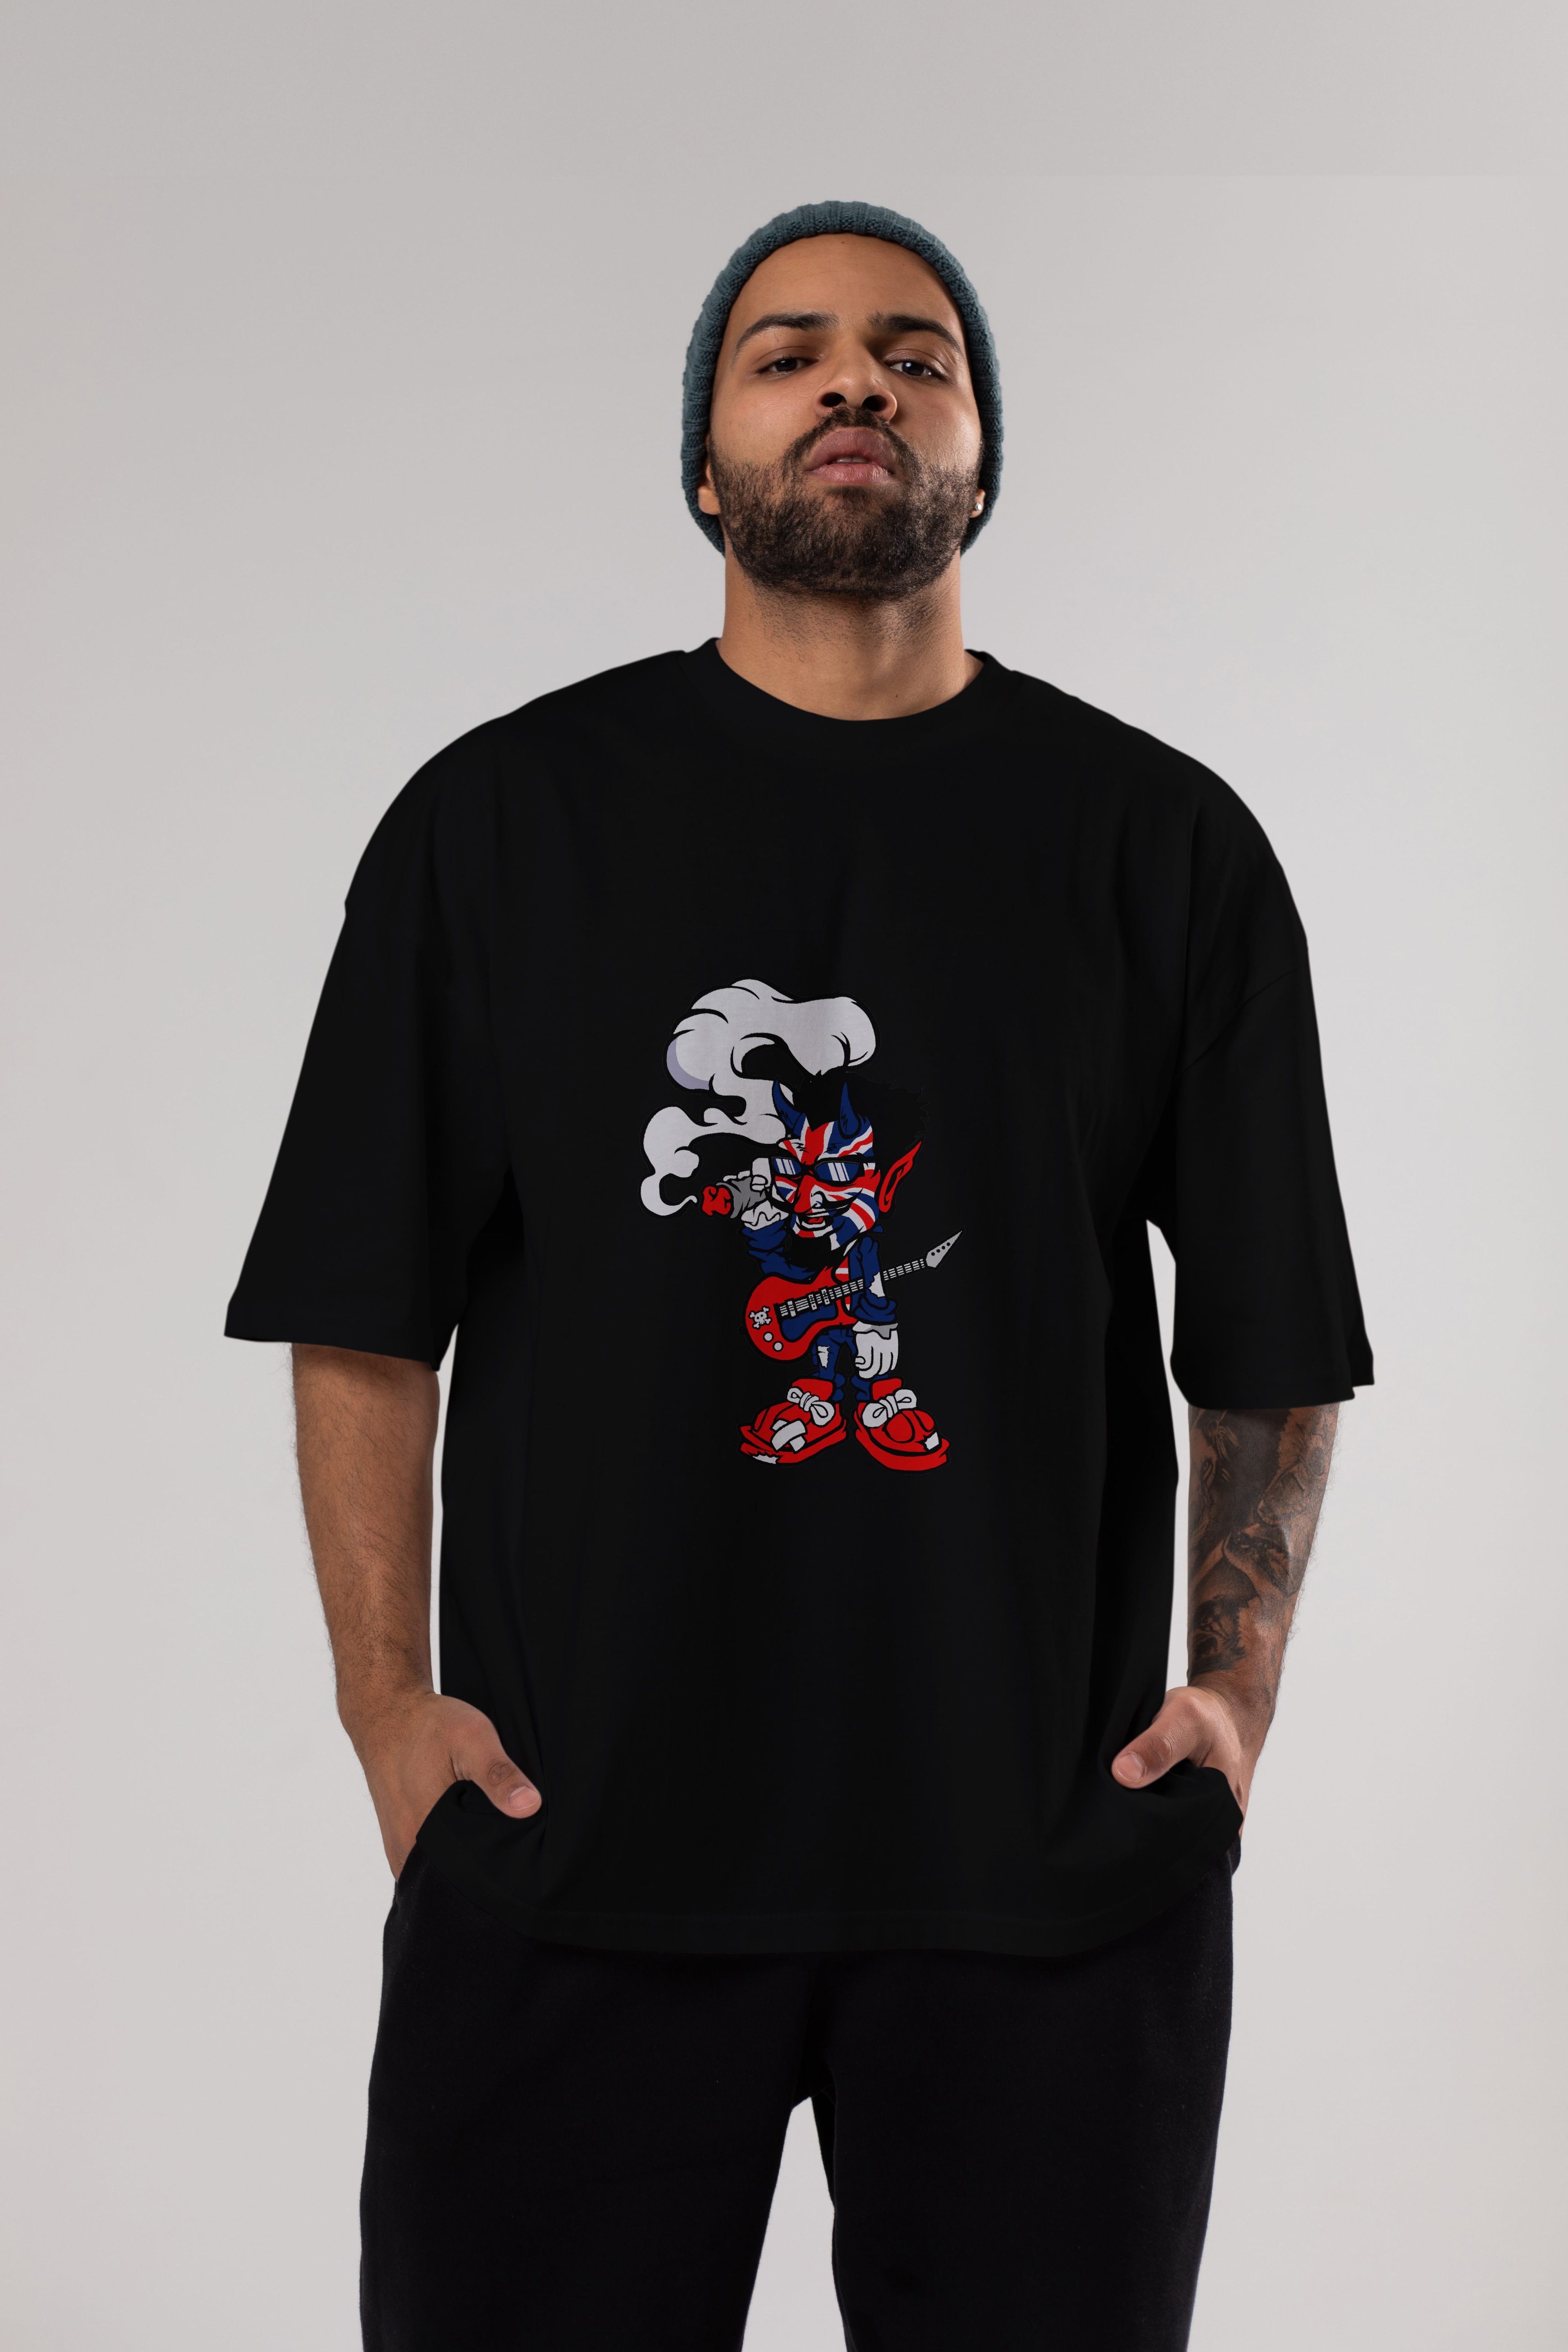 Uk Devil Rockstar Ön Baskılı Oversize t-shirt Erkek Kadın Unisex %100 Pamuk tişort